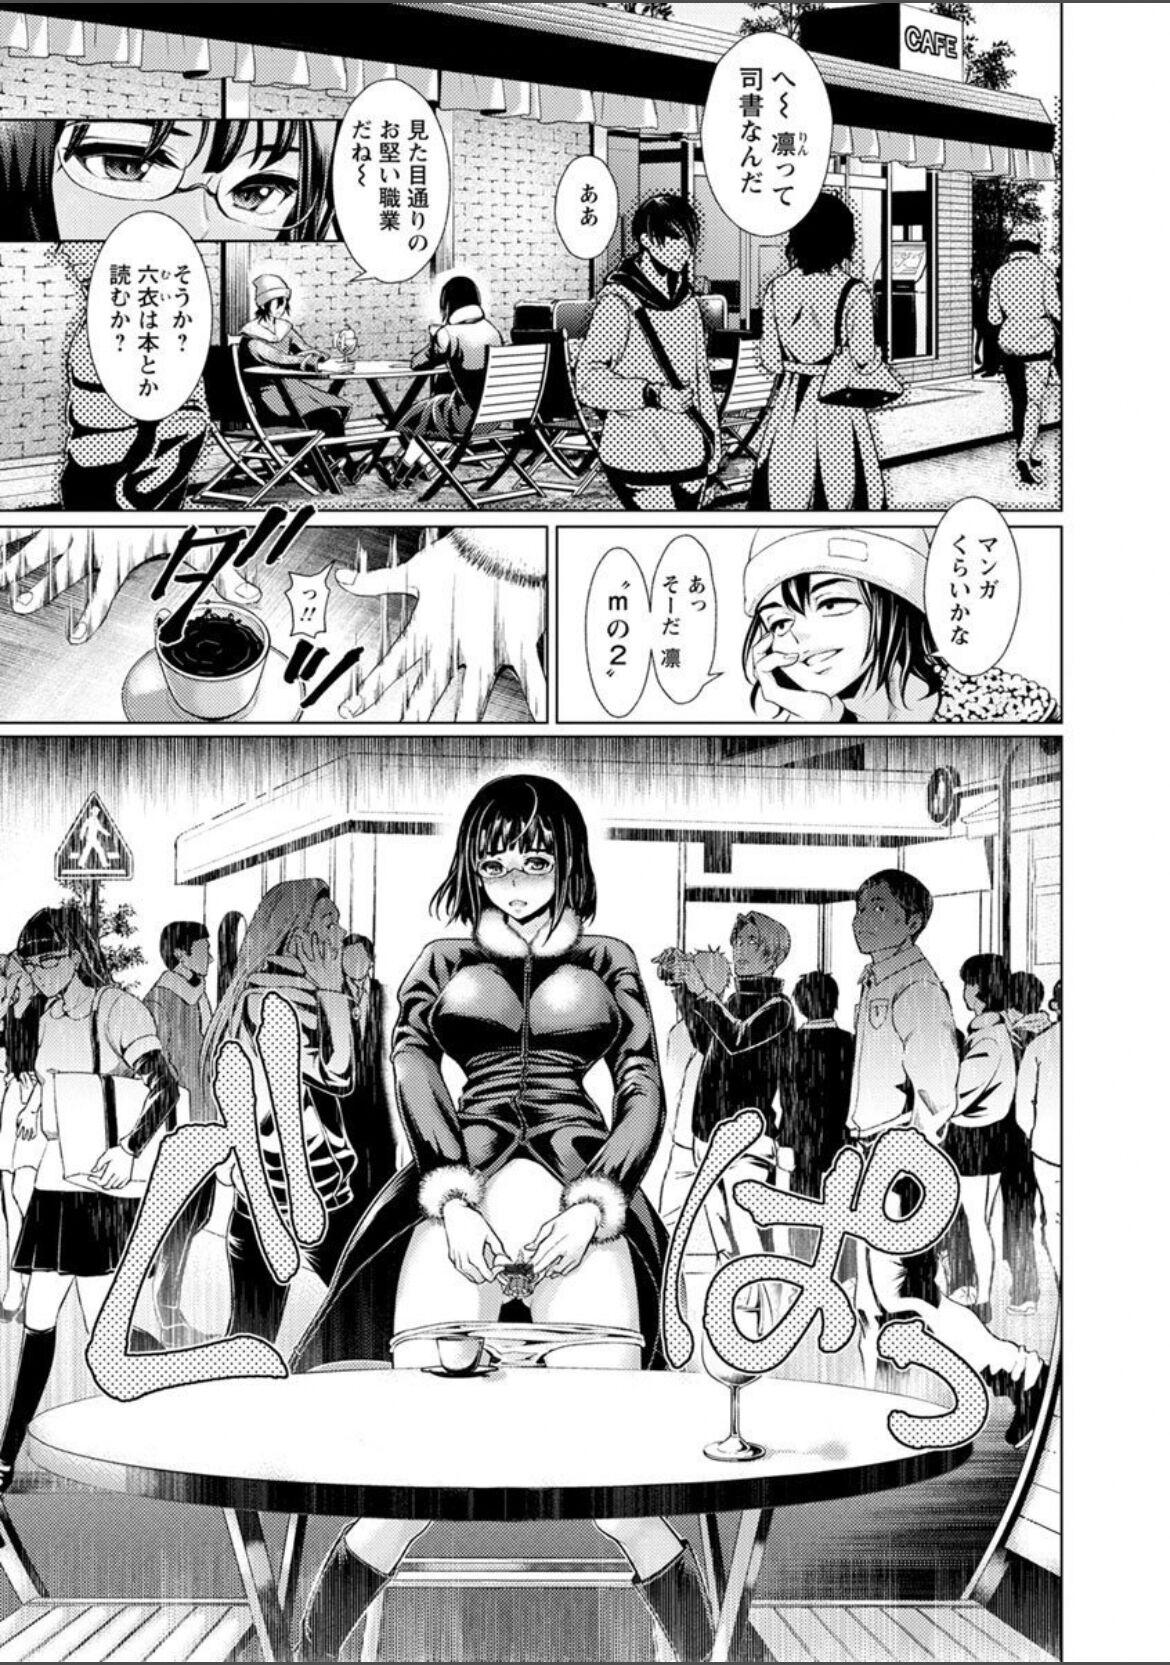 Mas Jhochiku Anal Ingyaku Houka Stripping - Page 7